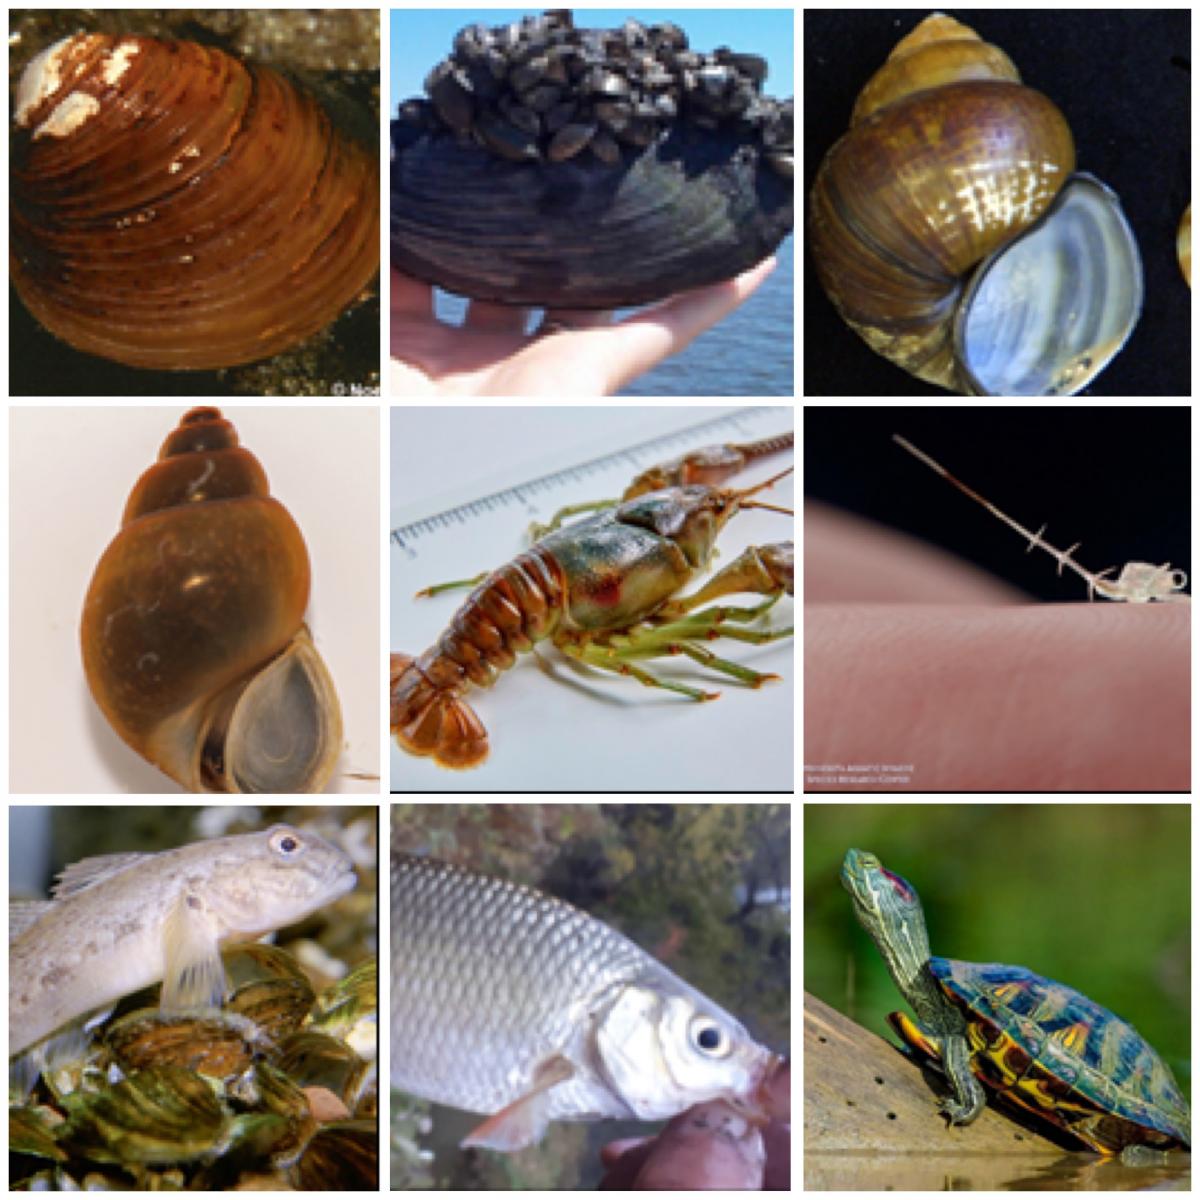 nine images of invasive species